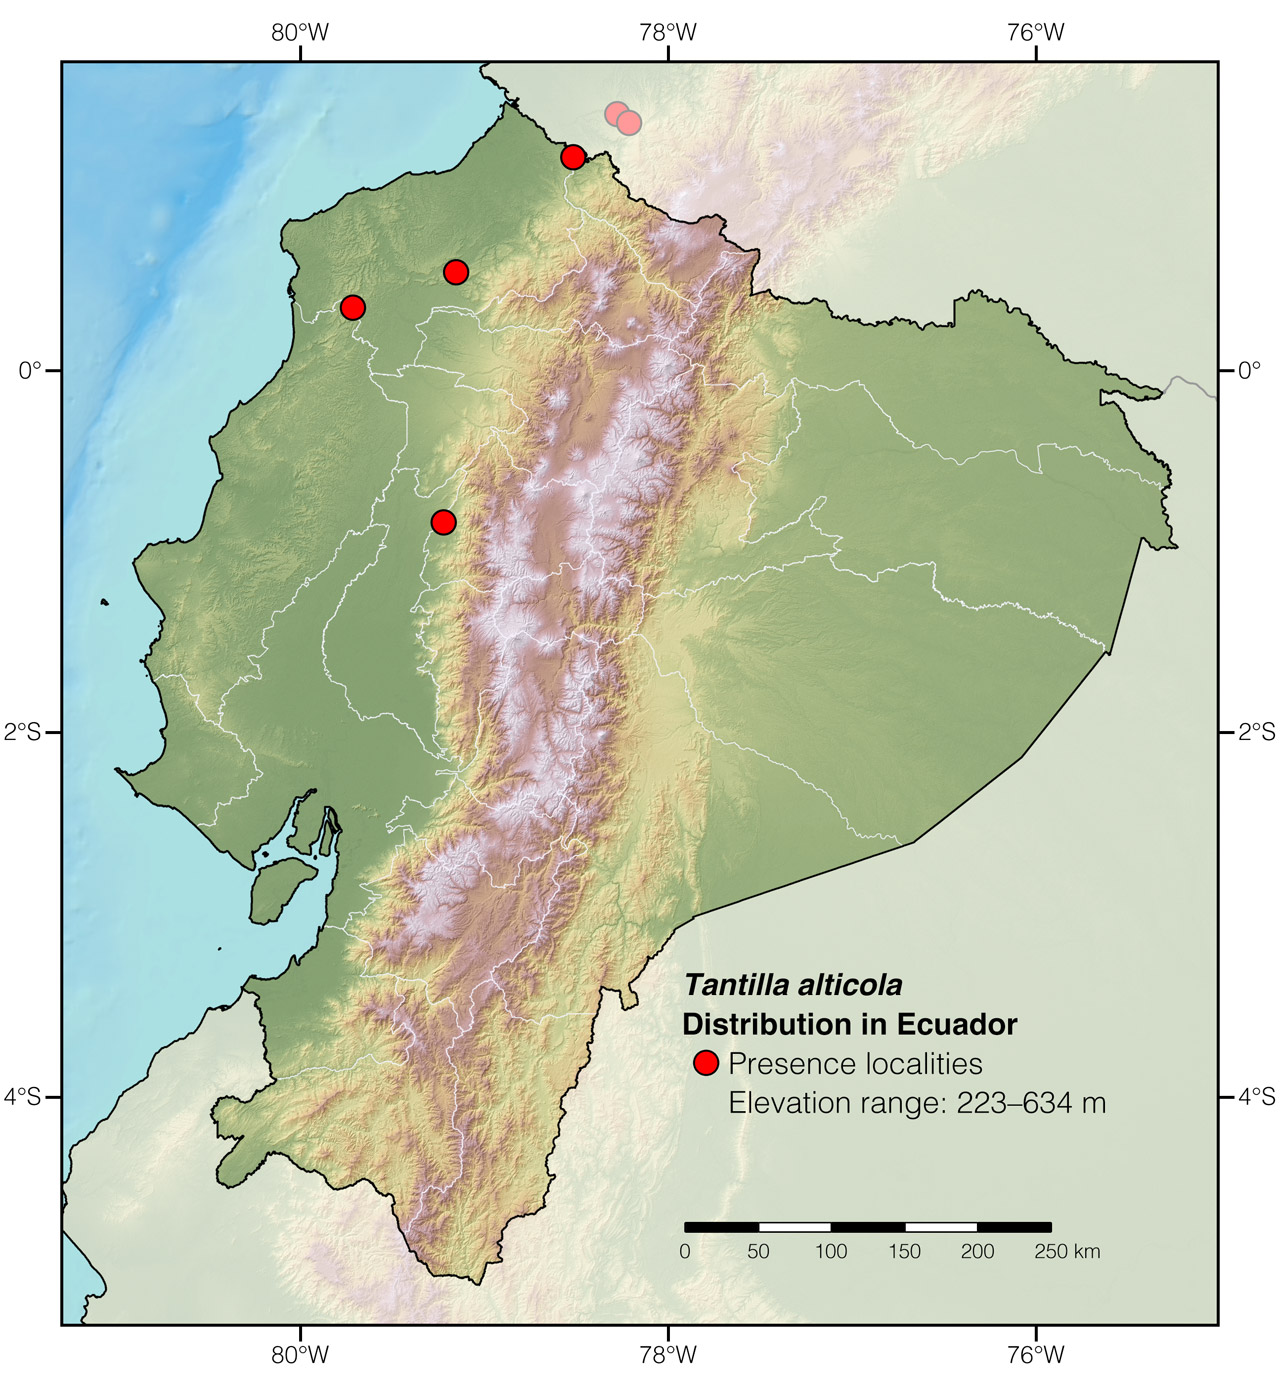 Distribution of Tantilla alticola in Ecuador